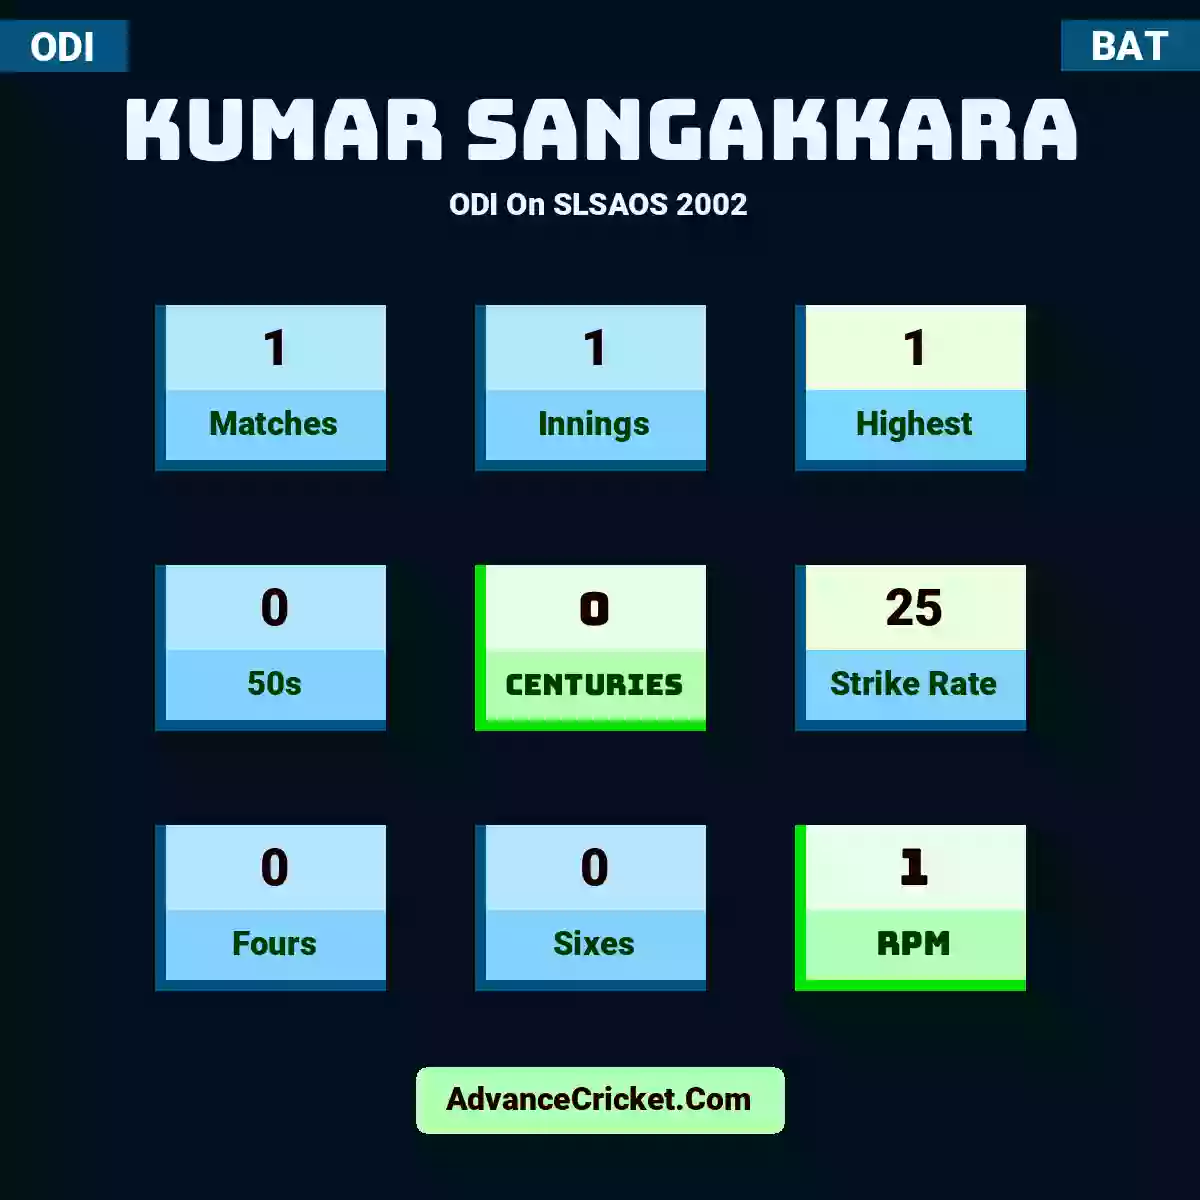 Kumar Sangakkara ODI  On SLSAOS 2002, Kumar Sangakkara played 1 matches, scored 1 runs as highest, 0 half-centuries, and 0 centuries, with a strike rate of 25. K.Sangakkara hit 0 fours and 0 sixes, with an RPM of 1.